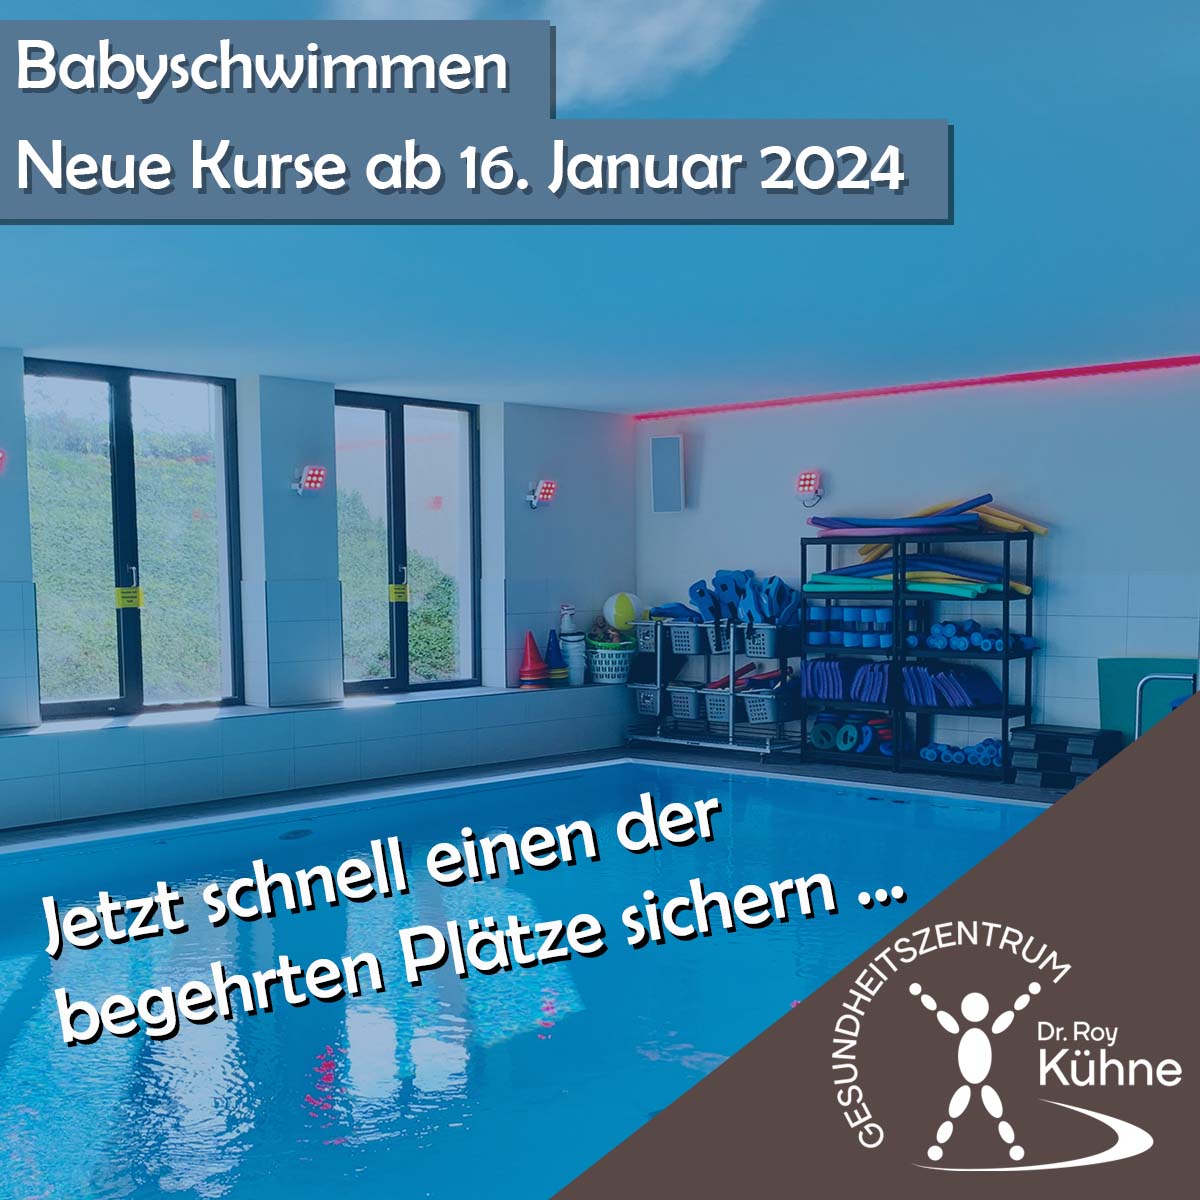 Babyschwimmen ab 16. Januar 2024